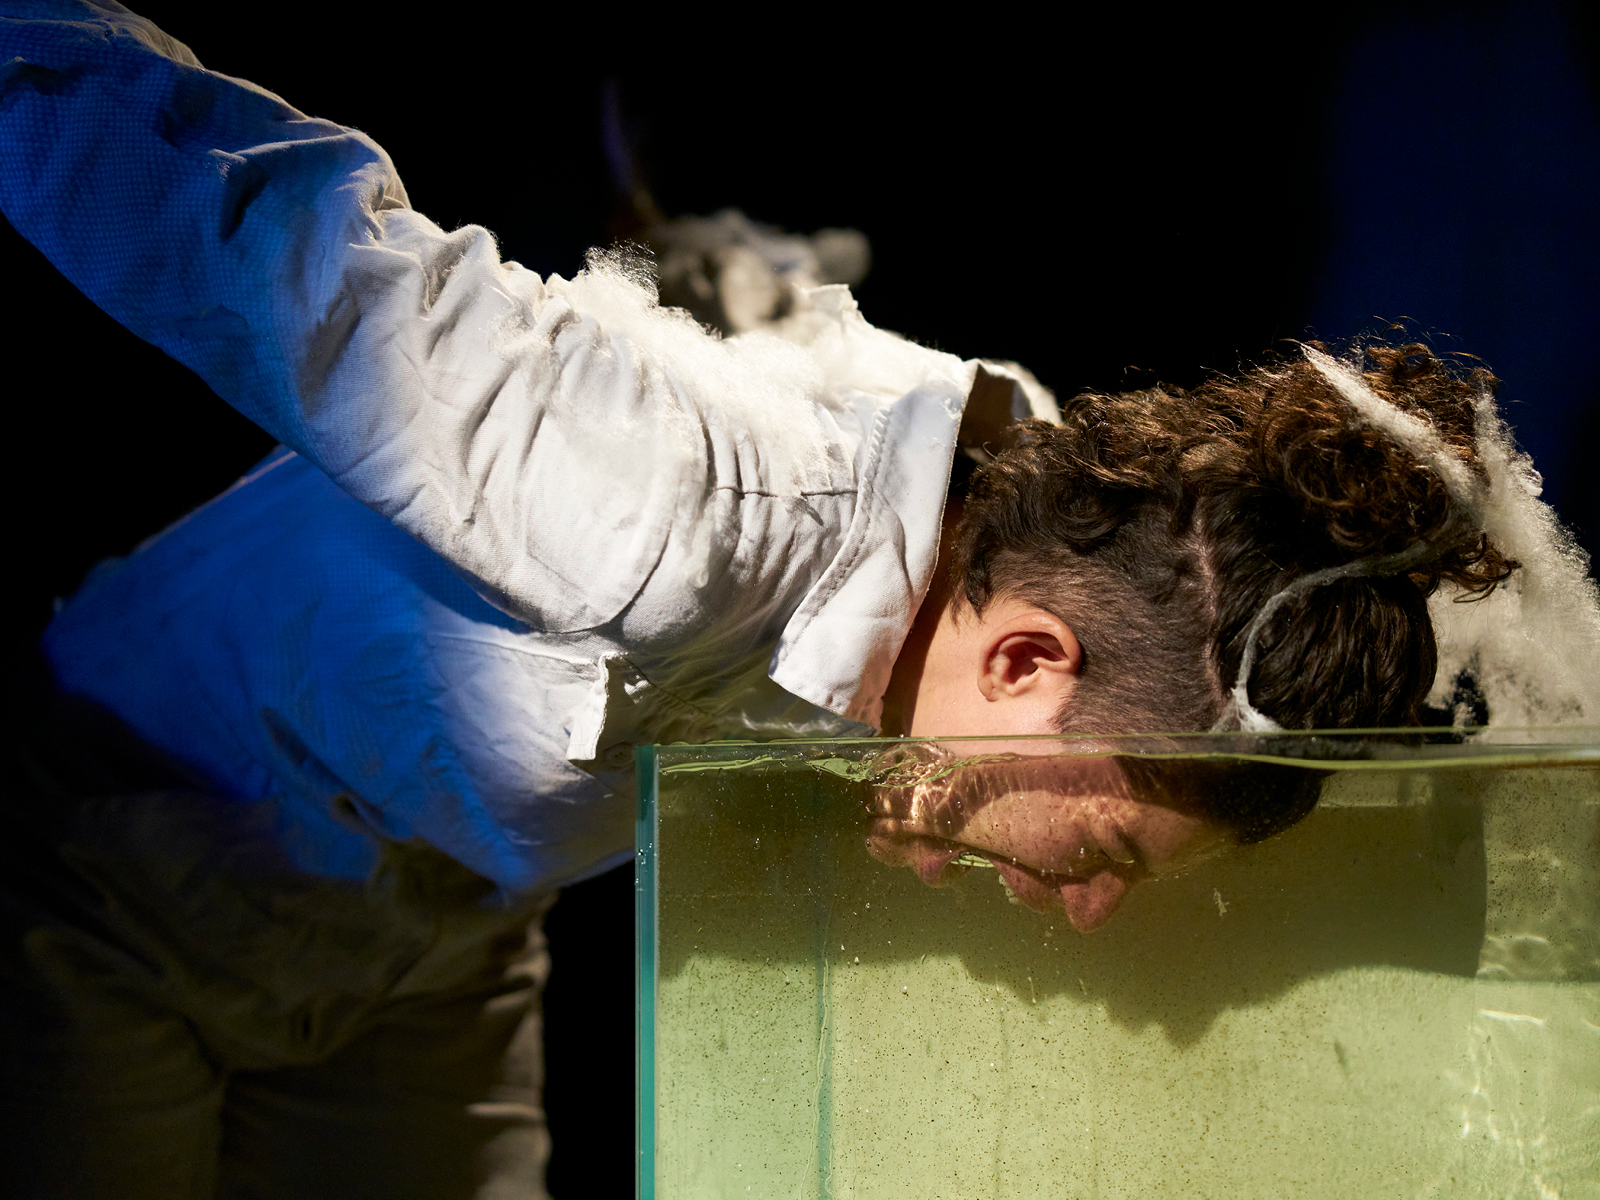 Performerin taucht ihren Kopf in ein mit Wasser gefülltes Aquarium. Ihr Mund ist weit geöffnet, als ob sie schreit.